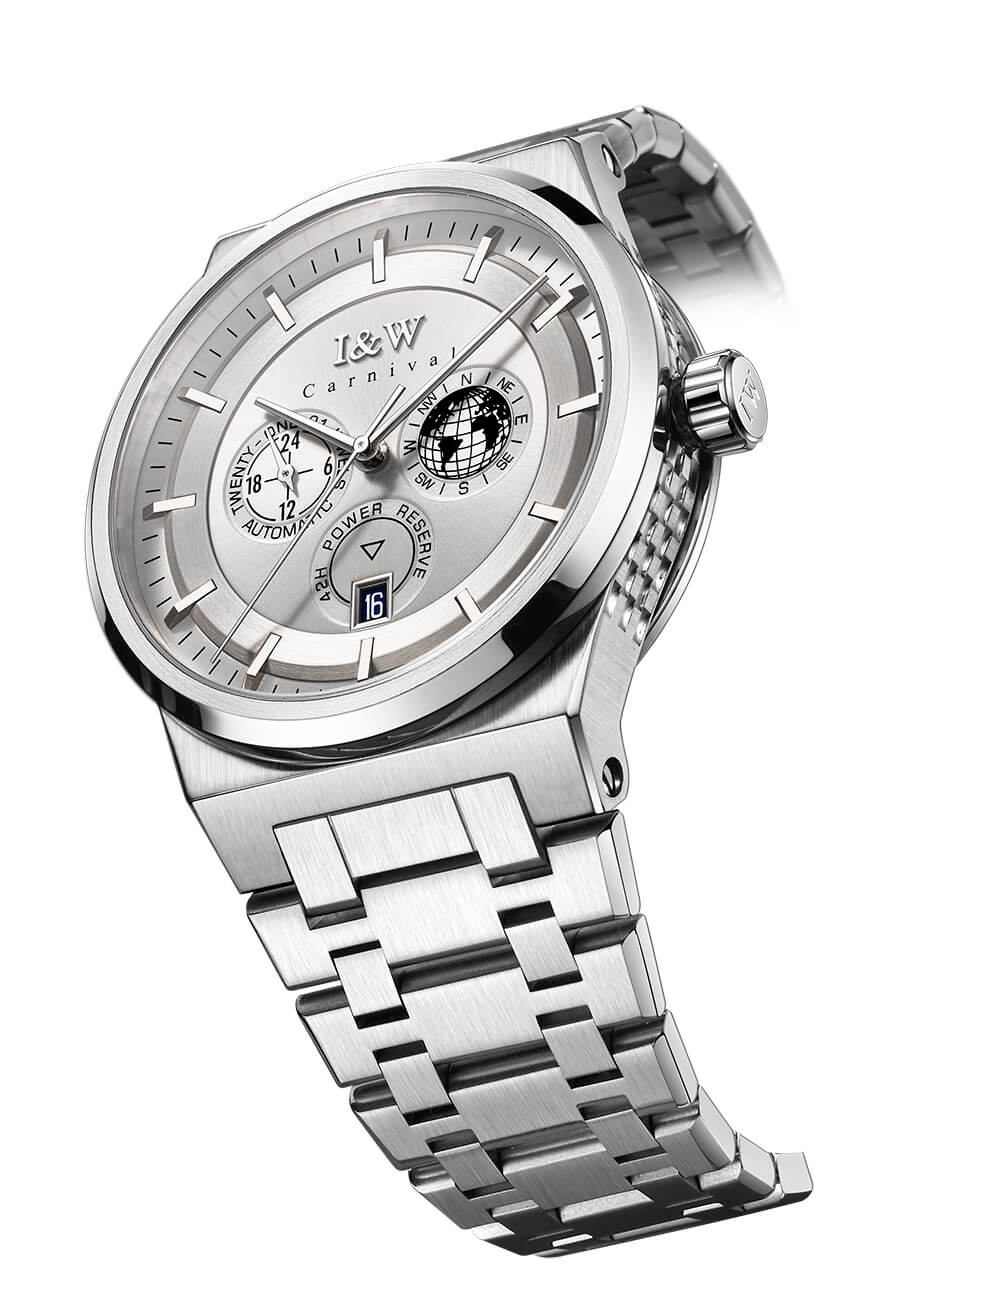 Đồng hồ nam chính hãng IW Carnival IW782G-7 ,kính sapphire,chống xước,chống nước 50m,Bh 24 tháng,máy cơ (automatic)